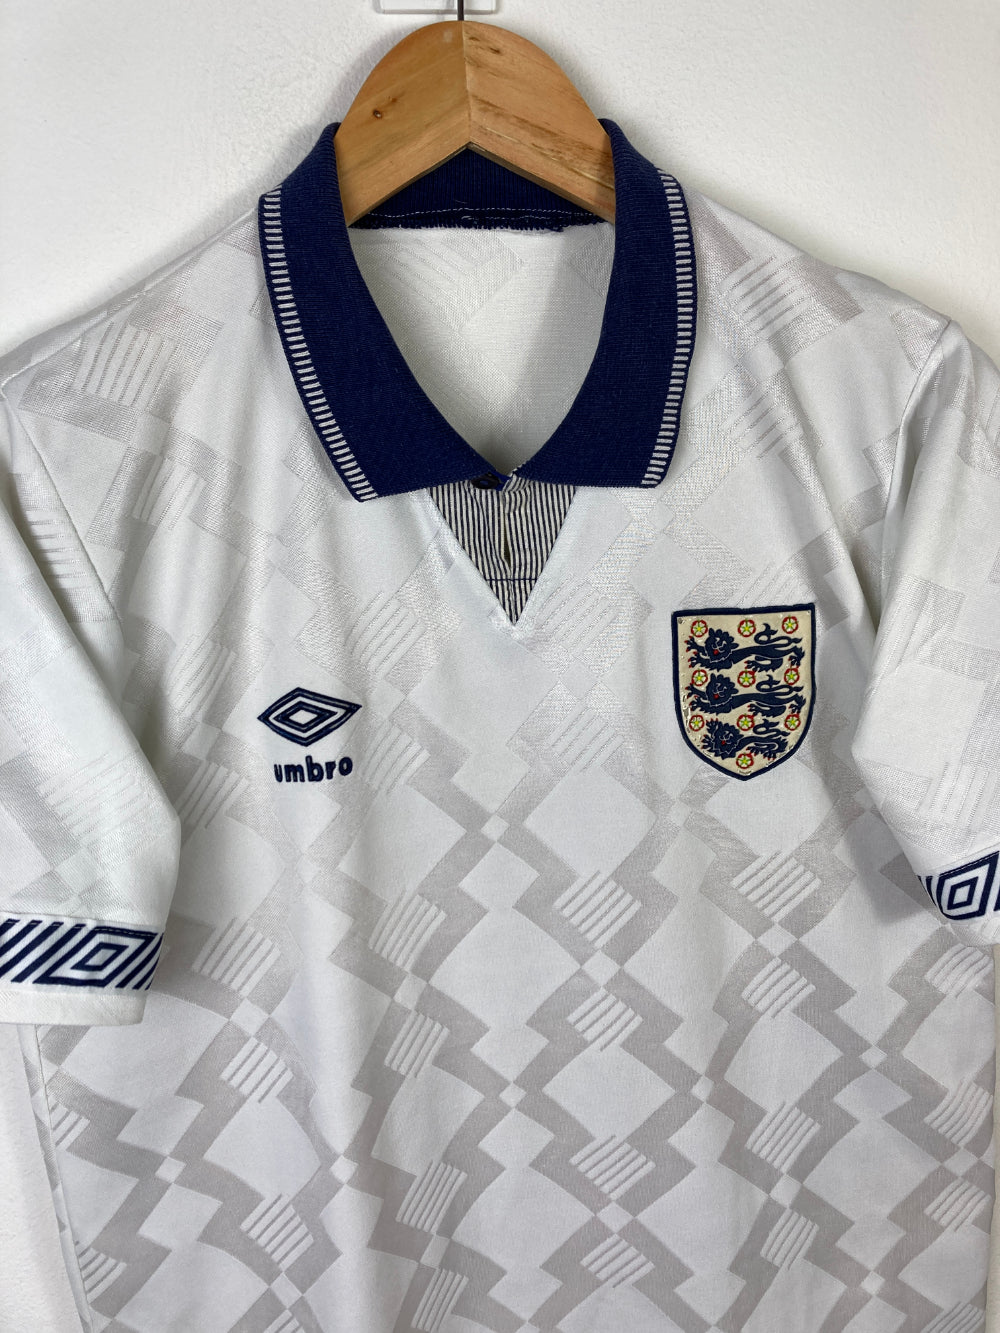 
                  
                    Original England Home Jersey 1990-1992 - S
                  
                